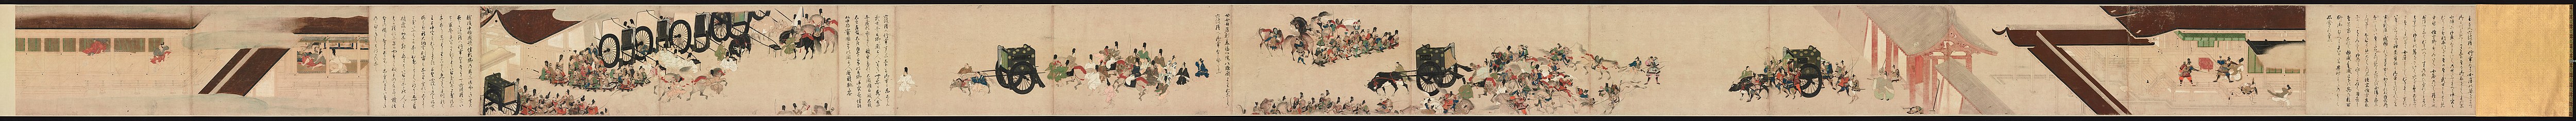 Storia Illustrata della Guerra Civile di Heiji: Rotolo della Visita Imperiale a Rokuhara